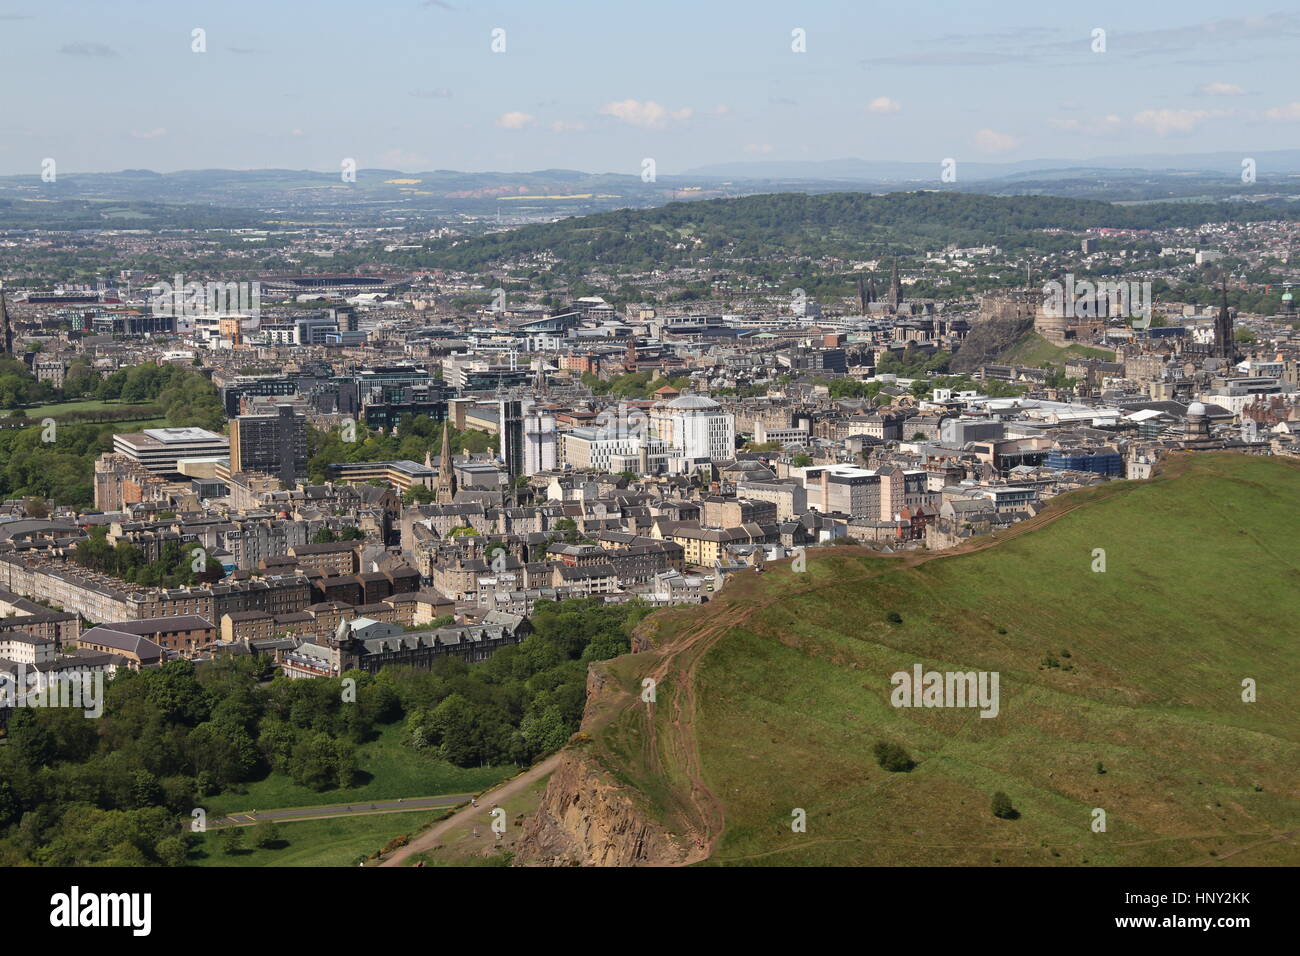 Edinburgh-Skyline von Arthurs Seat.Edinburgh Burg, Murrayfield Stadium und University of Edinburgh kann alle gesehen werden. Stockfoto